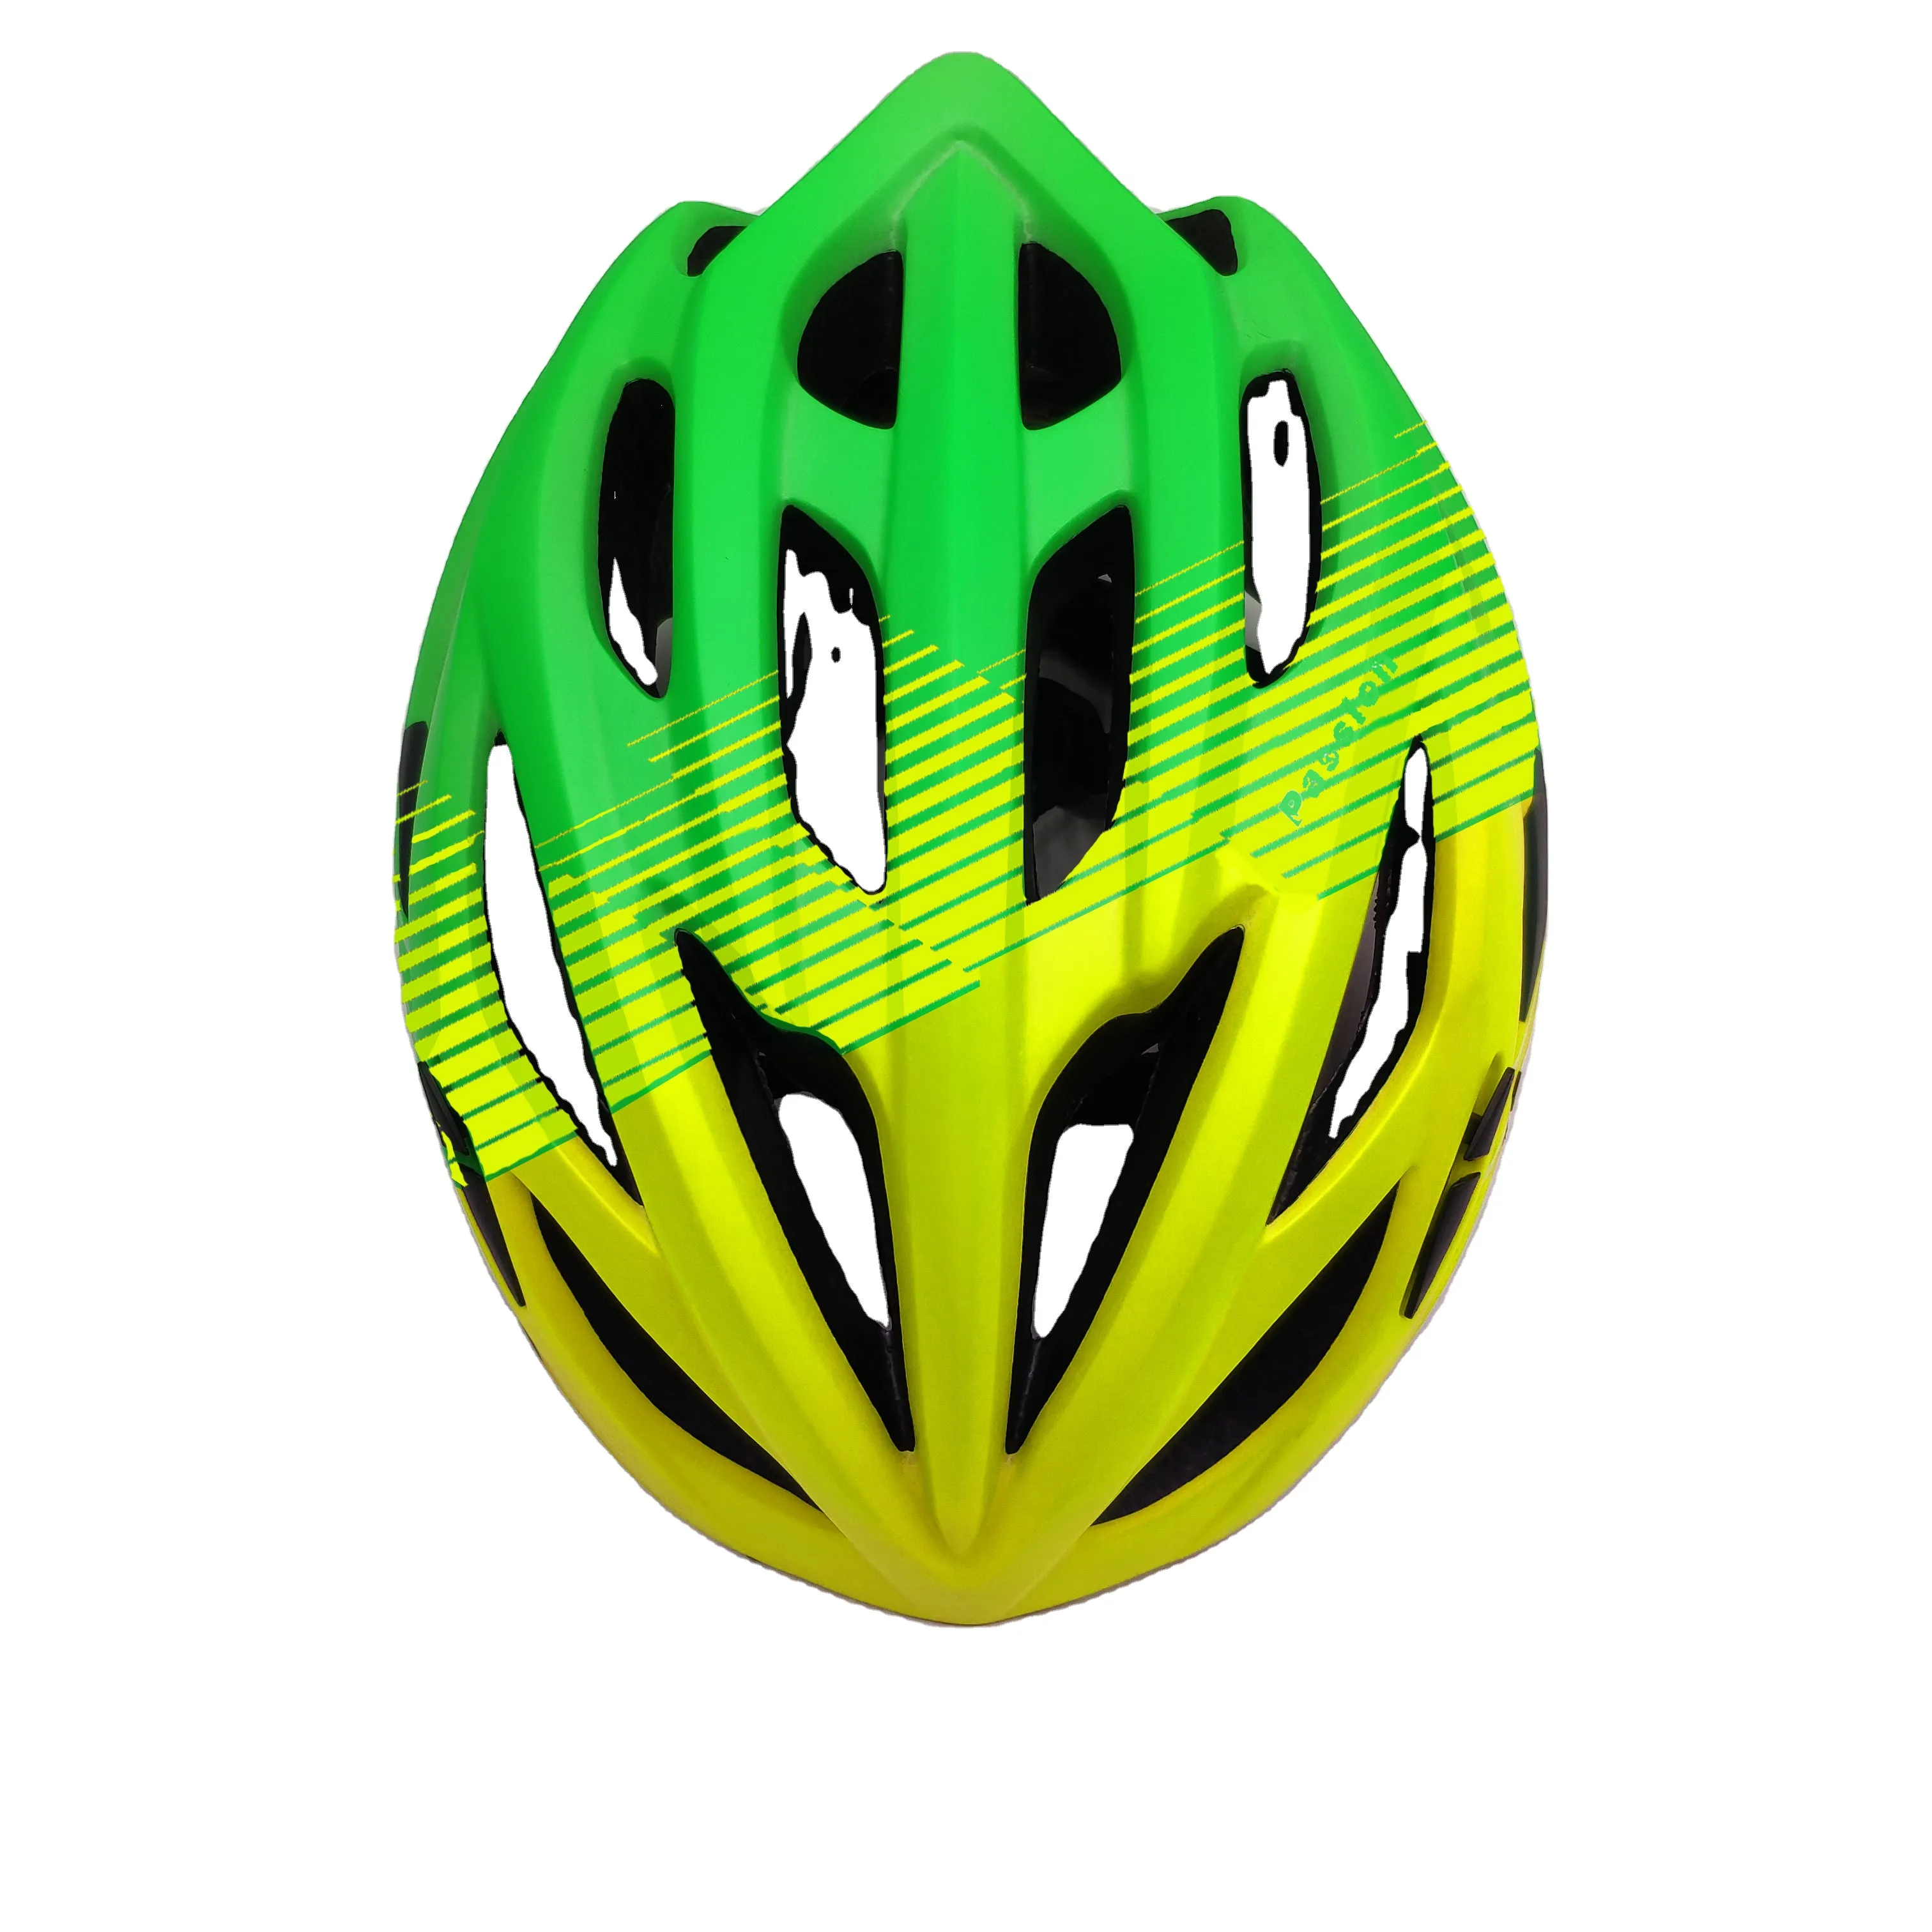 उच्च वर्ग तेजी से वितरण ग्रीन/काला/लाल/बहु-रंग साइकिल सहायक उपकरण साइकिल हेलमेट के लिए वयस्क/बच्चों